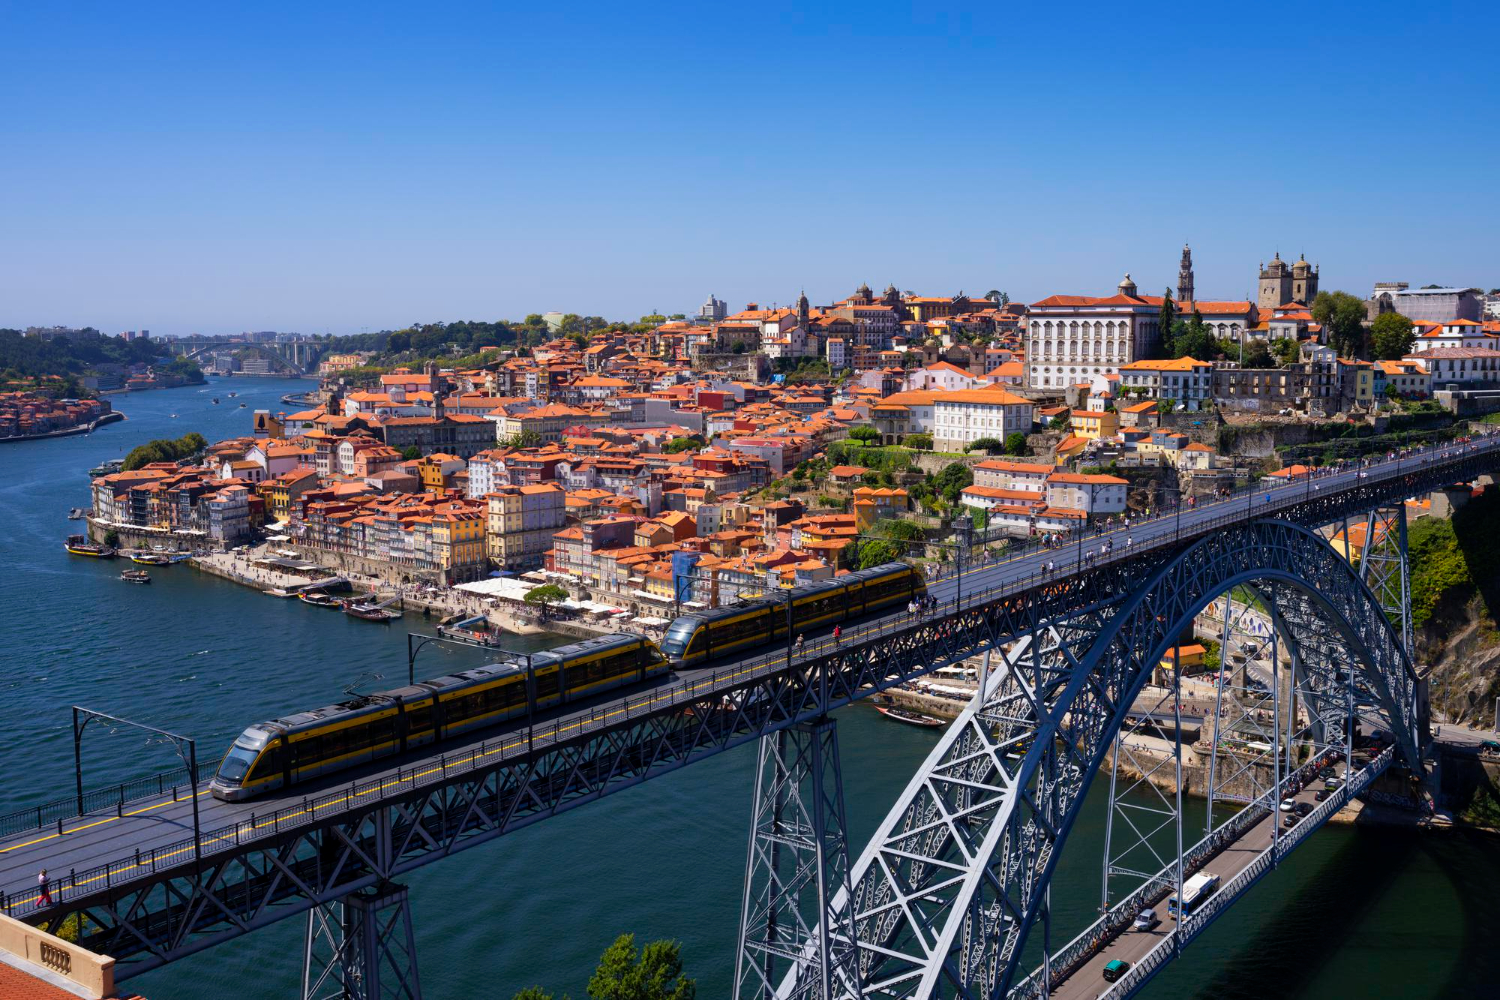 Vanabundos.com Staedtereise Portugal Top 5 Sehenswuerdigkeiten